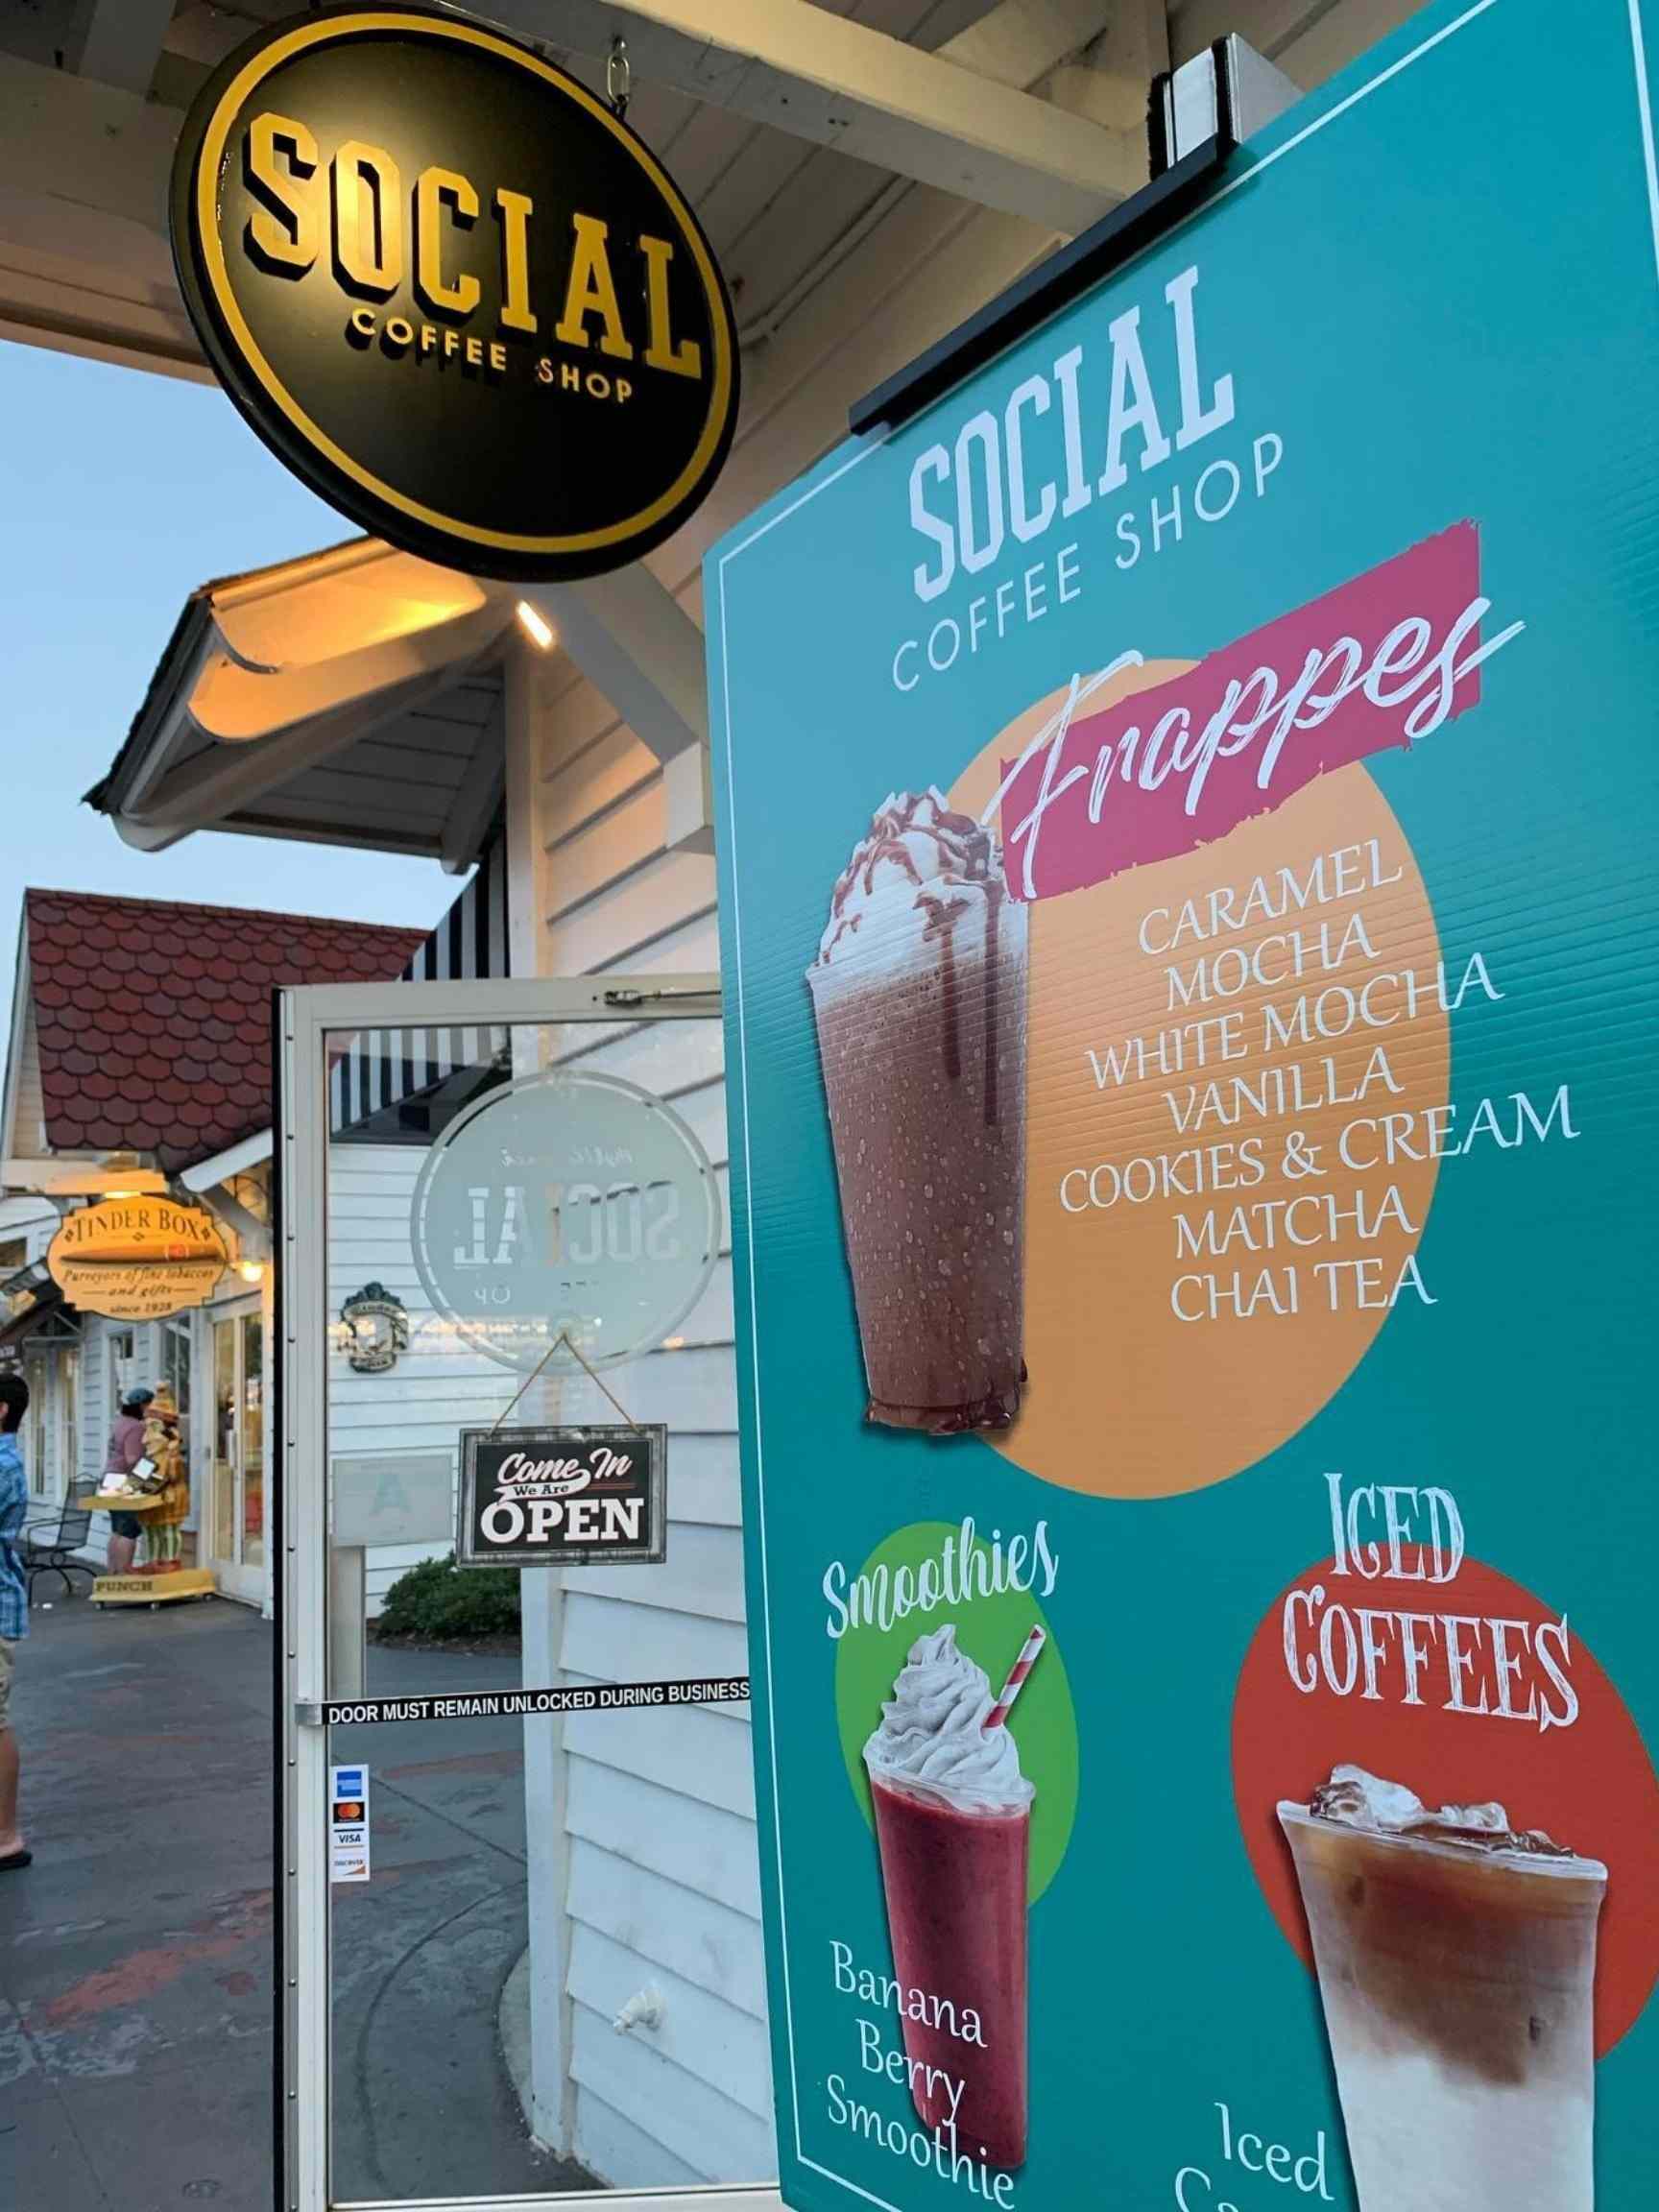 Social Coffee Shop - best coffee shops in myrtle beach